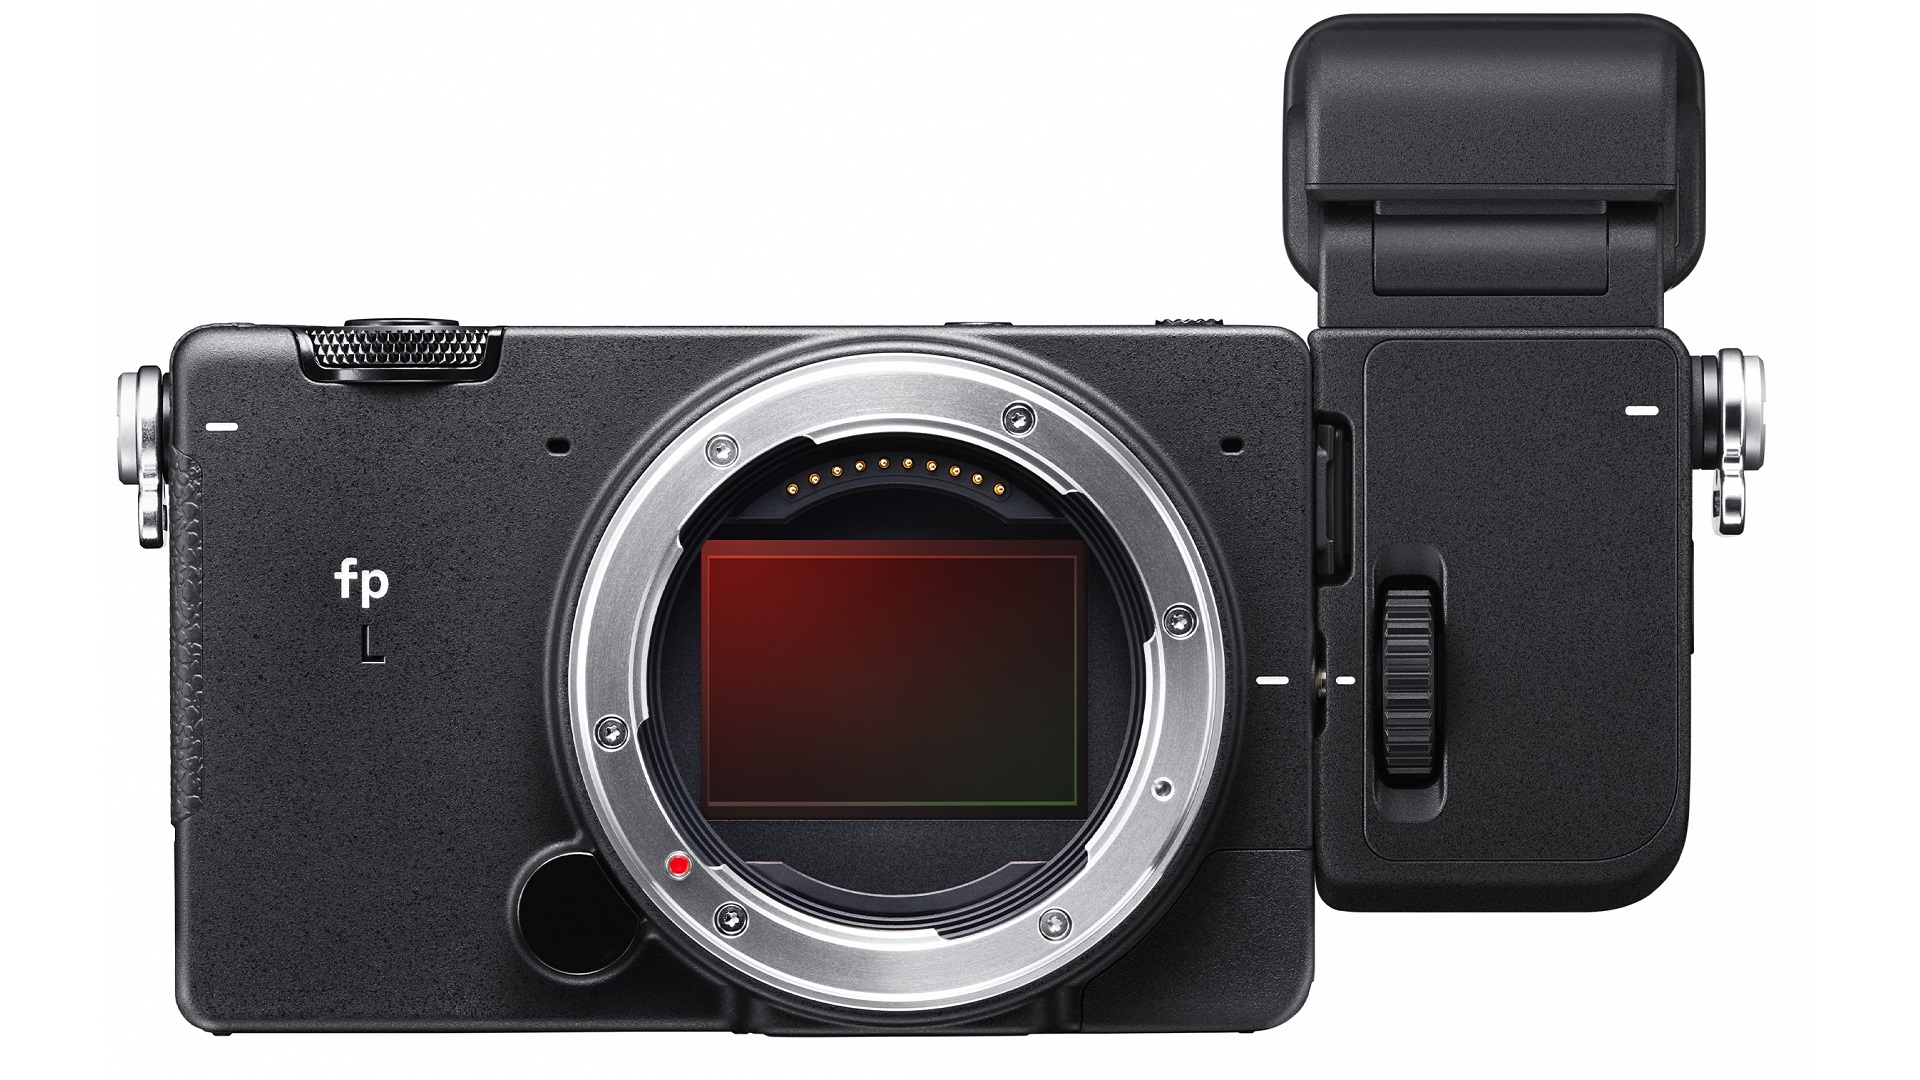 シグマがfp LカメラとEVF-11ビューファインダーを発表 | CineD